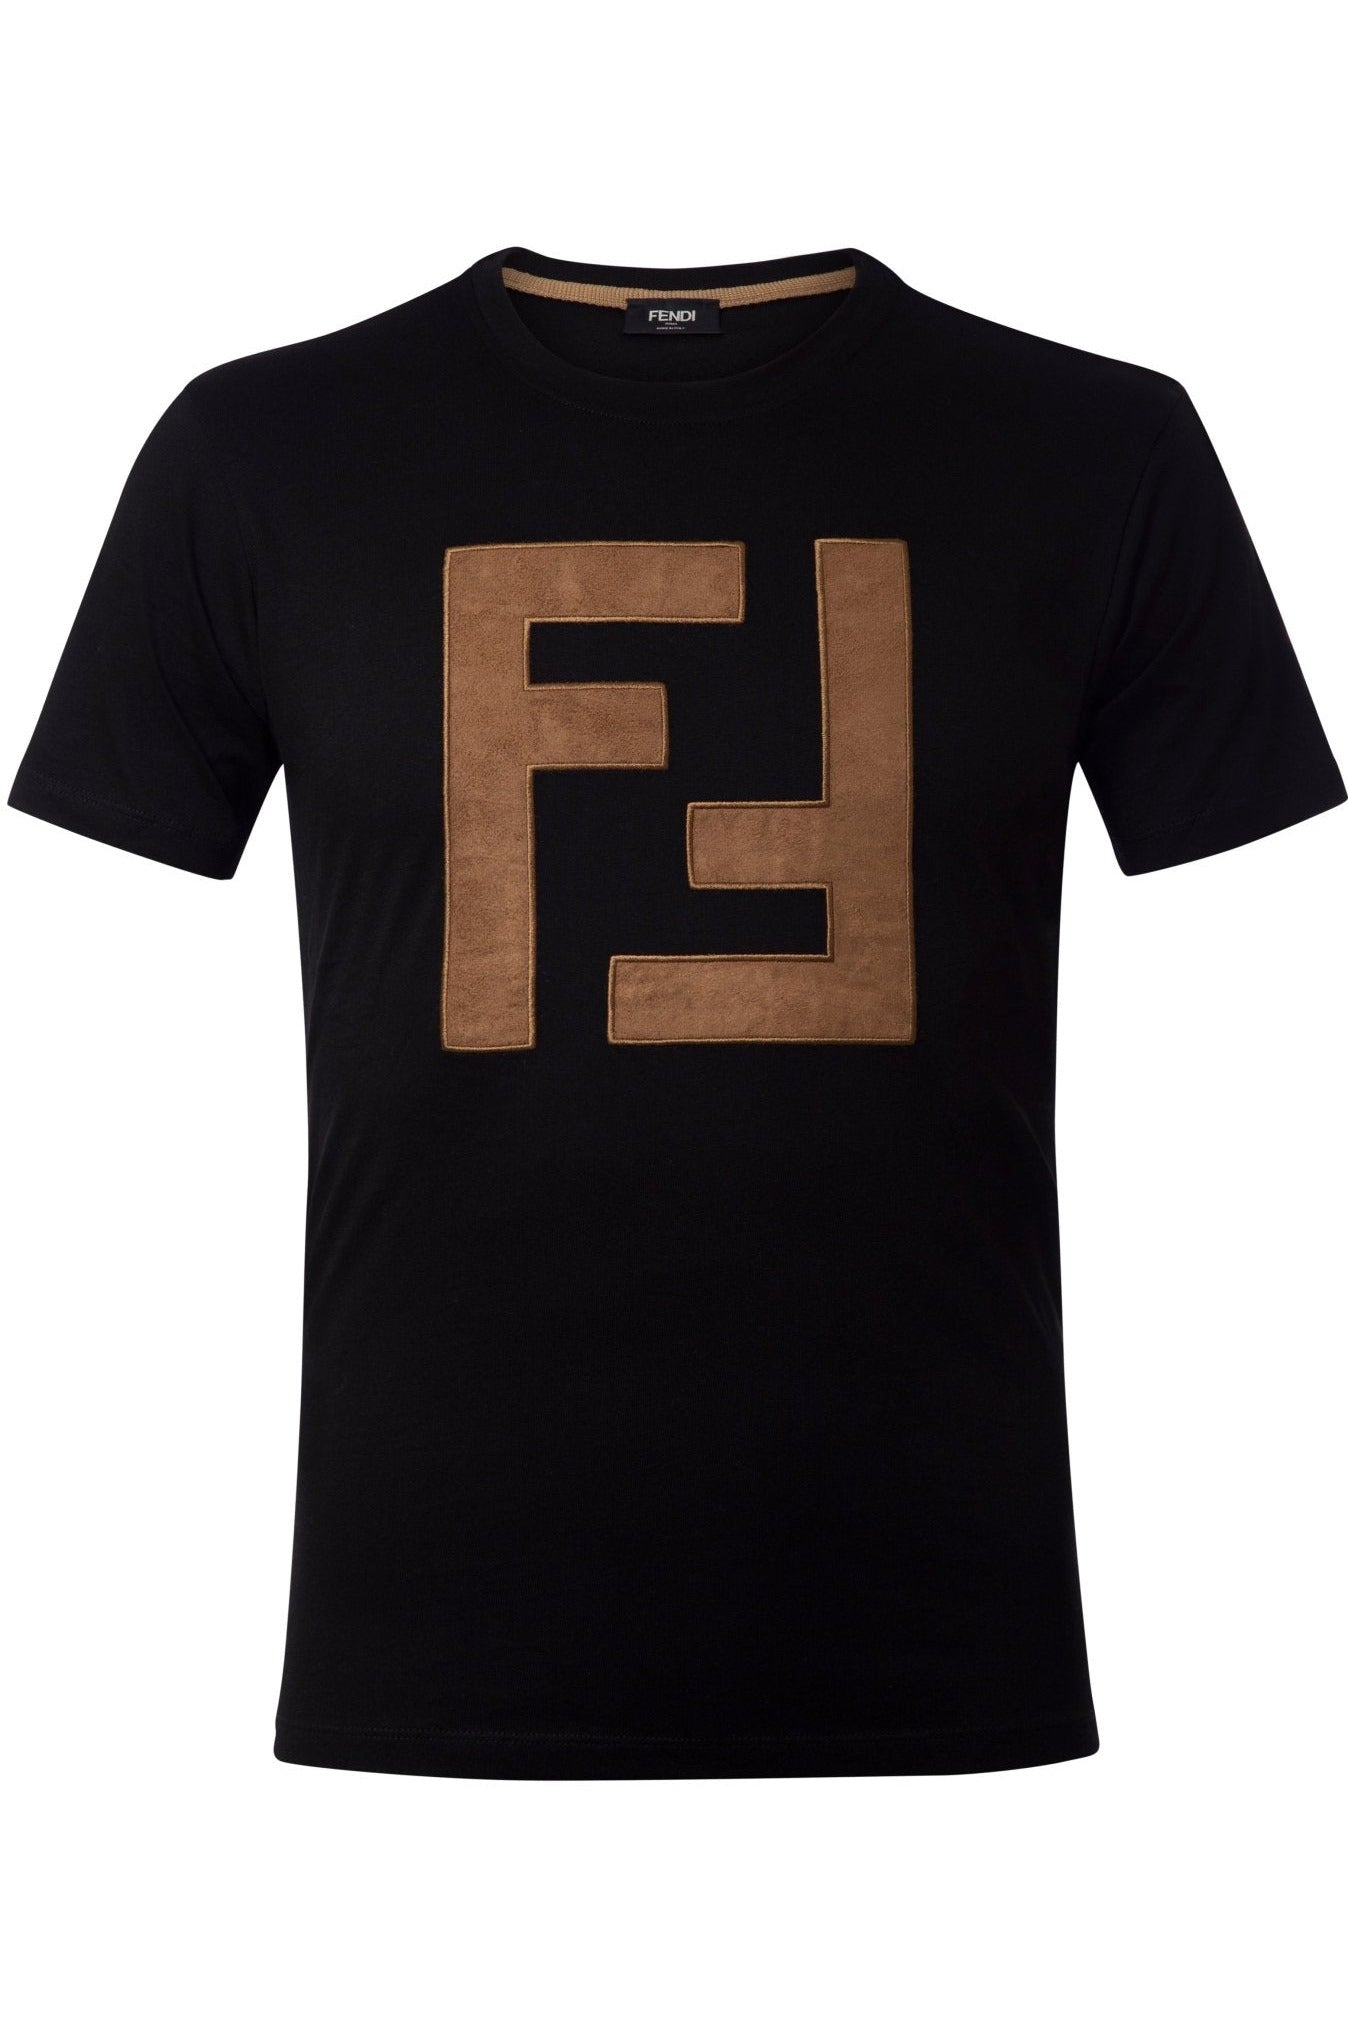 FENDI T-shirt